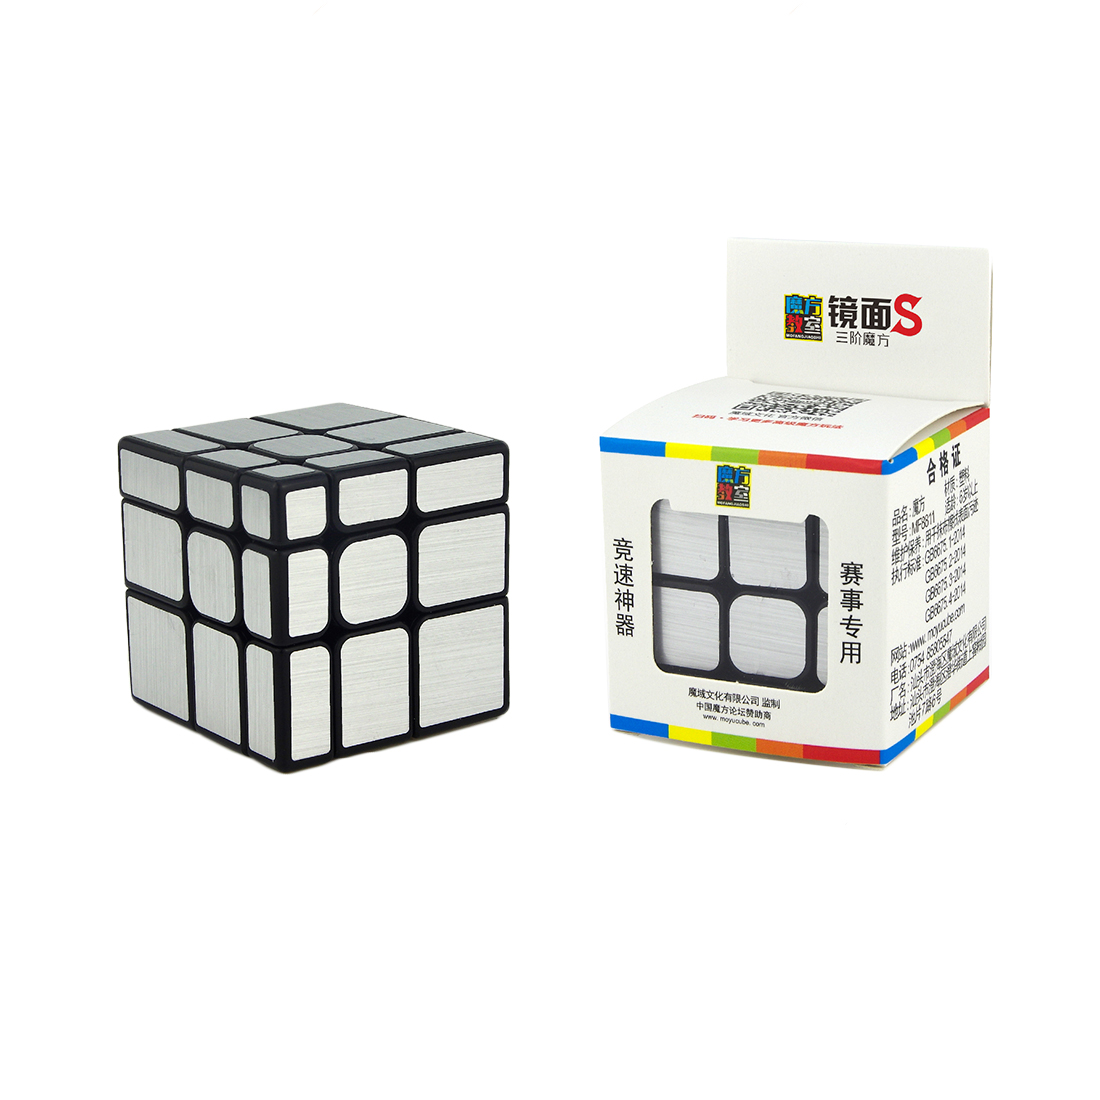 Rubik Moyu Biến Thể Rubik 3x3 Mirror ( Bạc ) - Khối Lập Phương Rubik Gương ( Biến thể cao cấp )